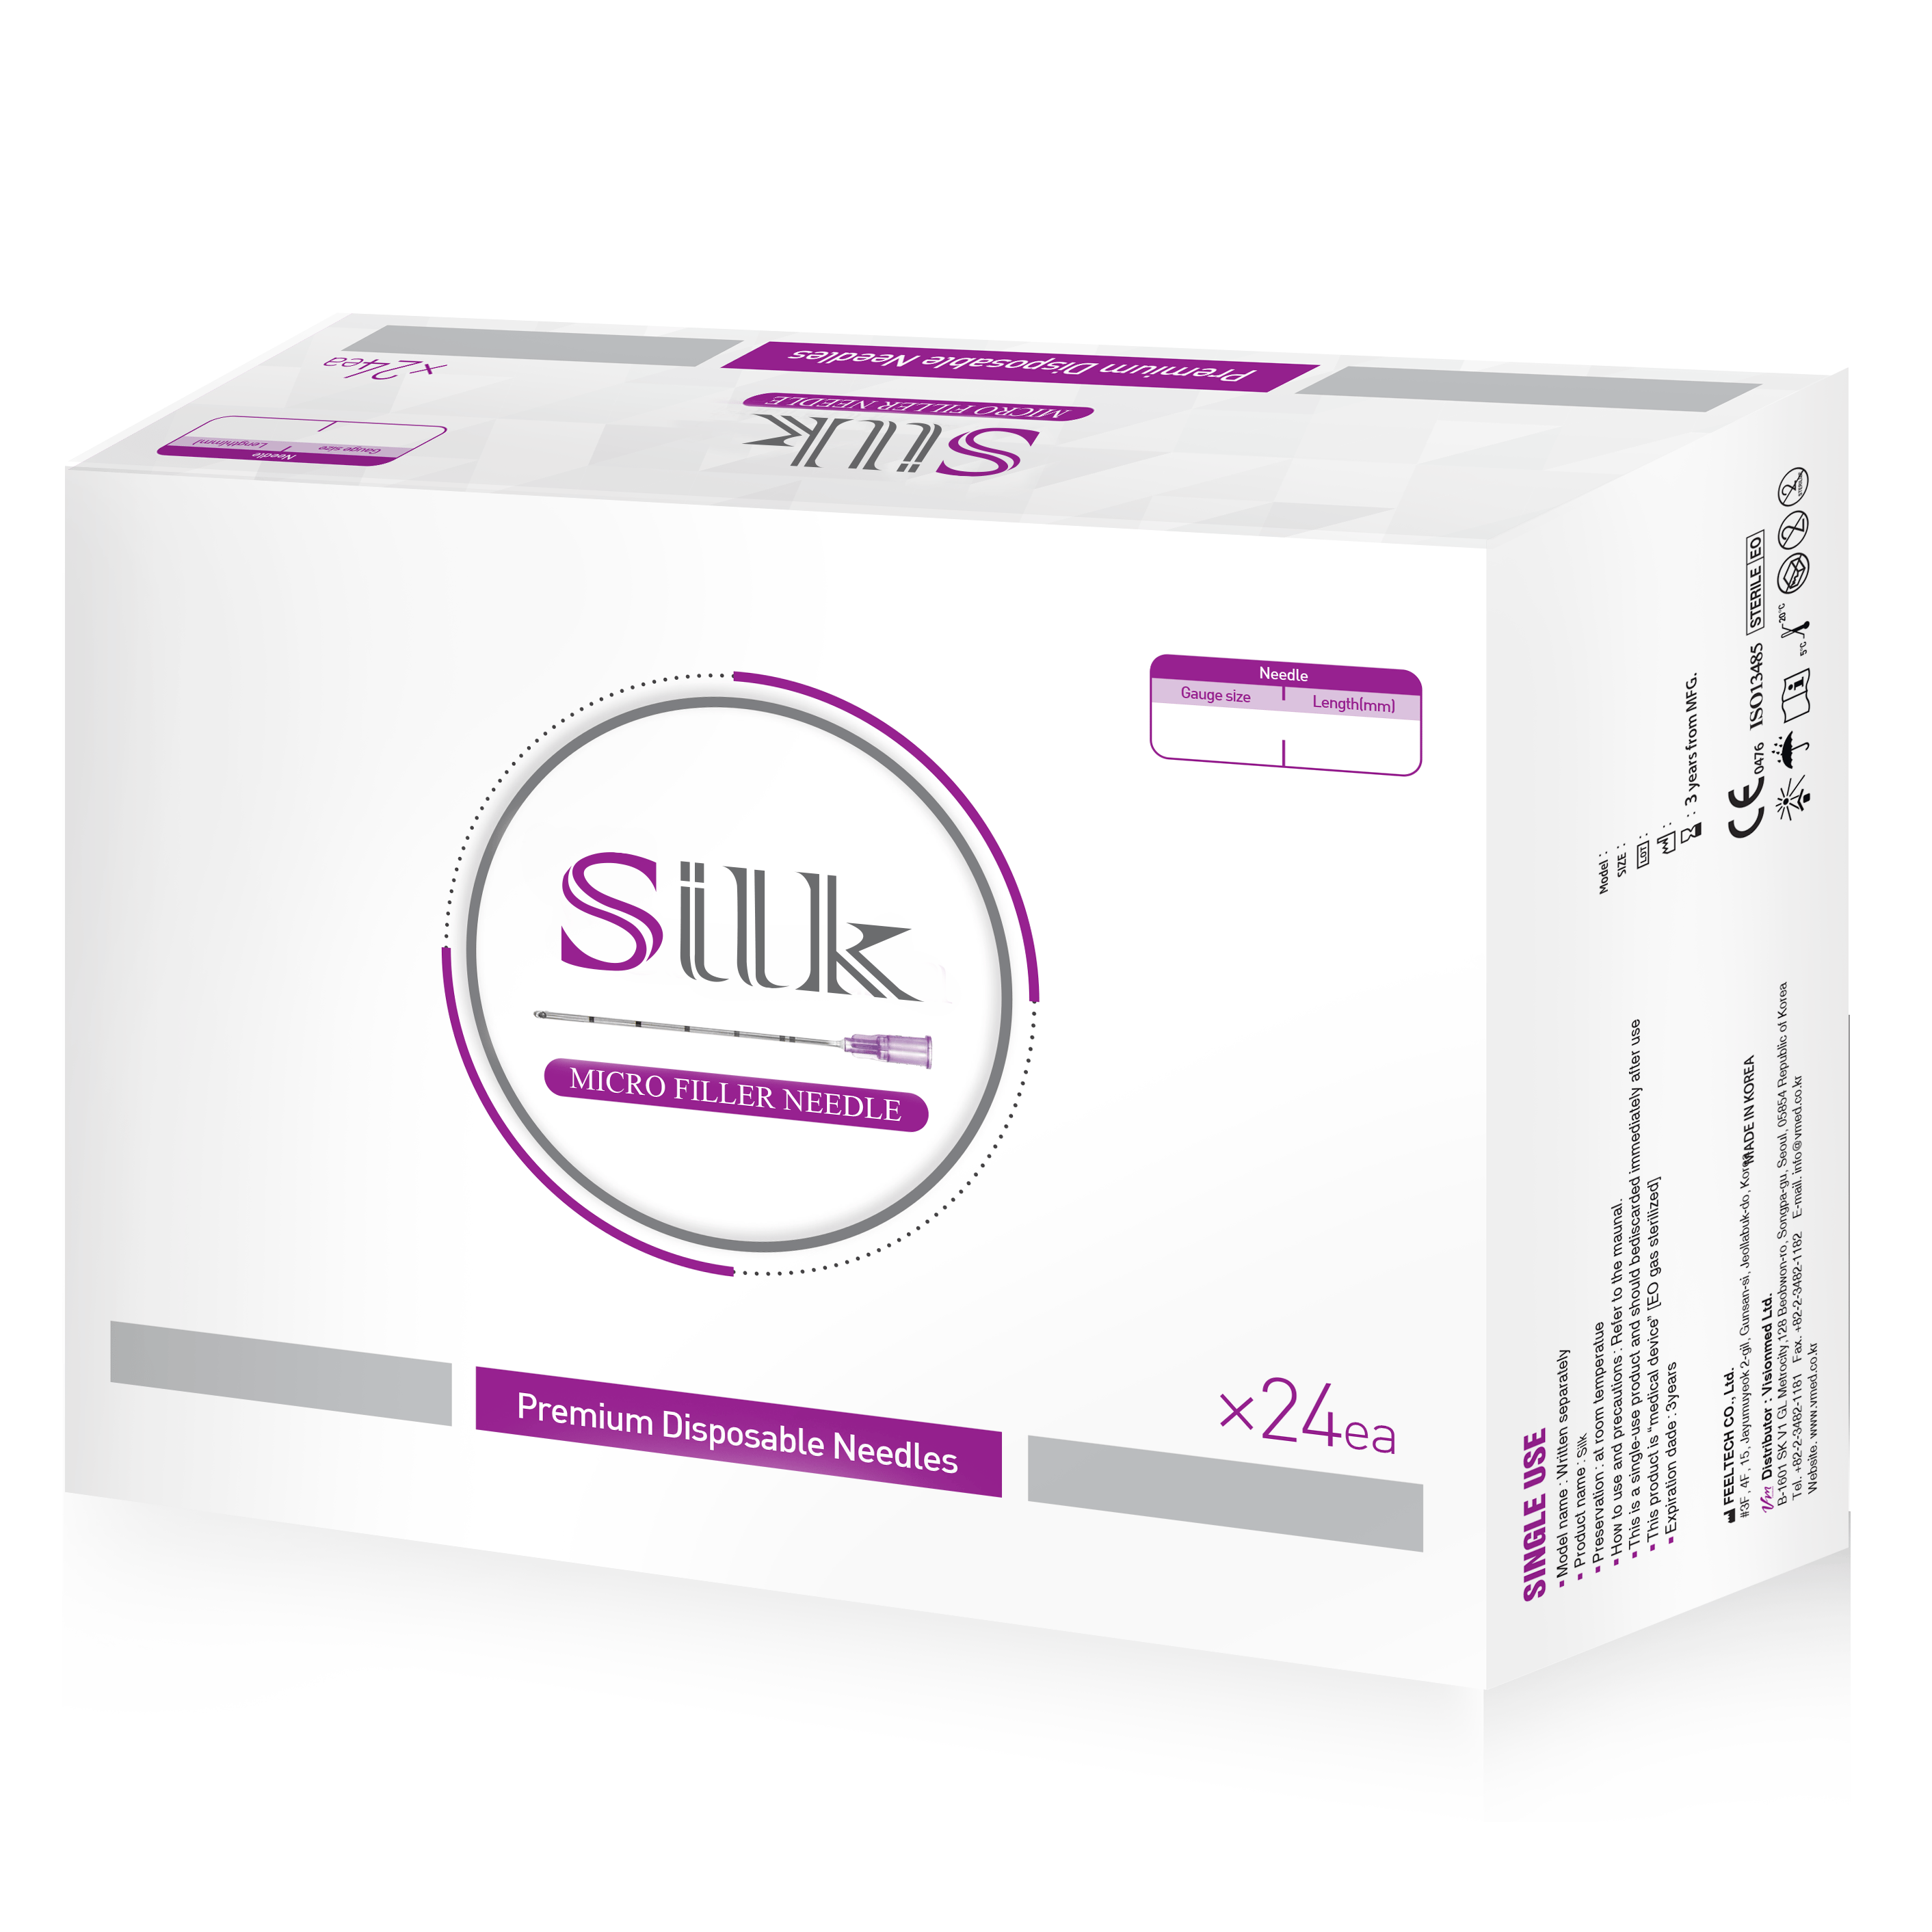 Silk Cannula 25G X 40mm (24 Per Box)